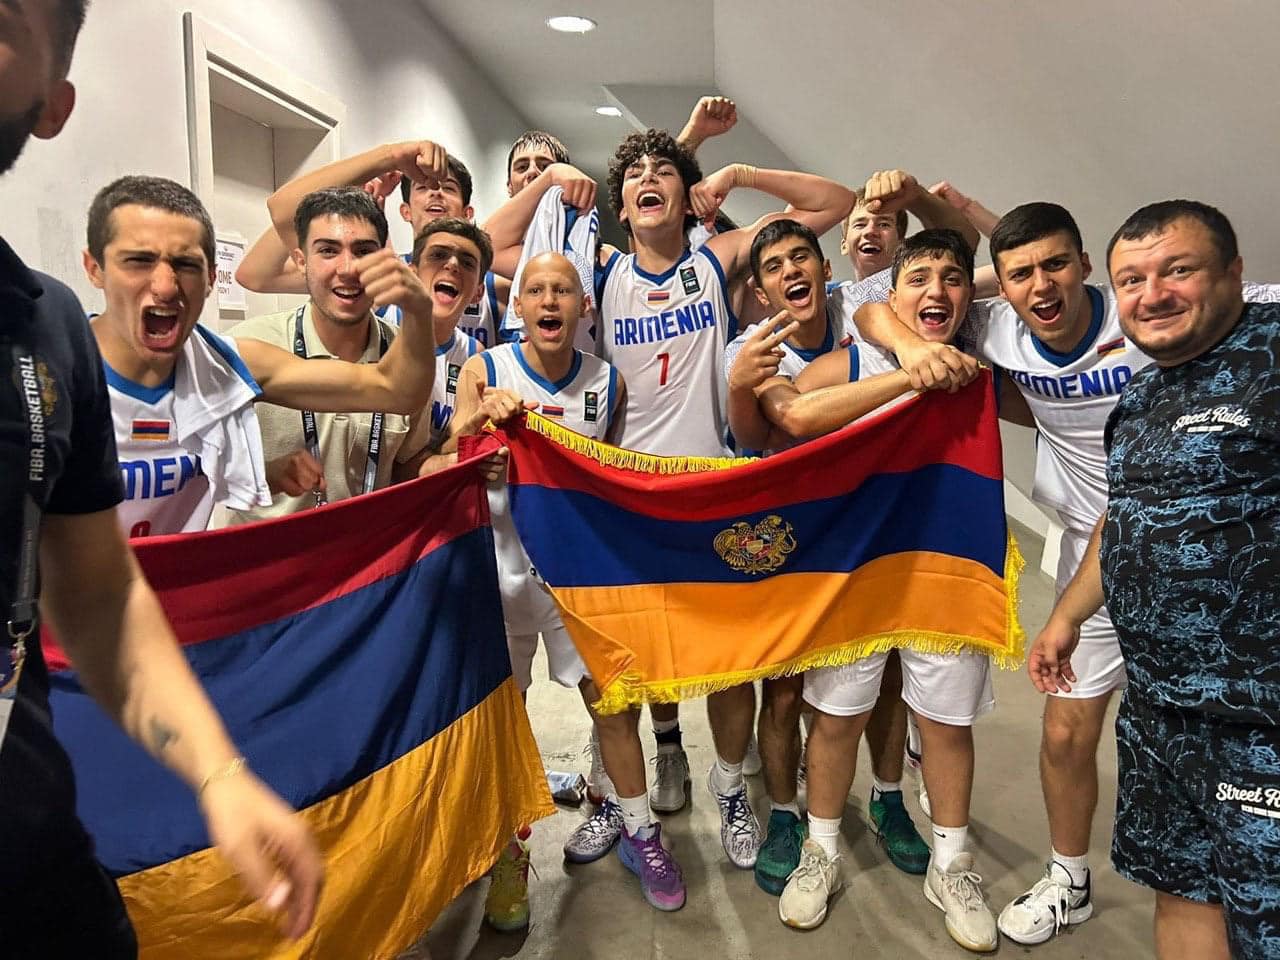 Հայաստանի բասկետբոլի տղամարդկանց Մ16 թիմը դարձավ ԵԱ-ն C դիվիզիոնում բրոնզե մեդալակիր